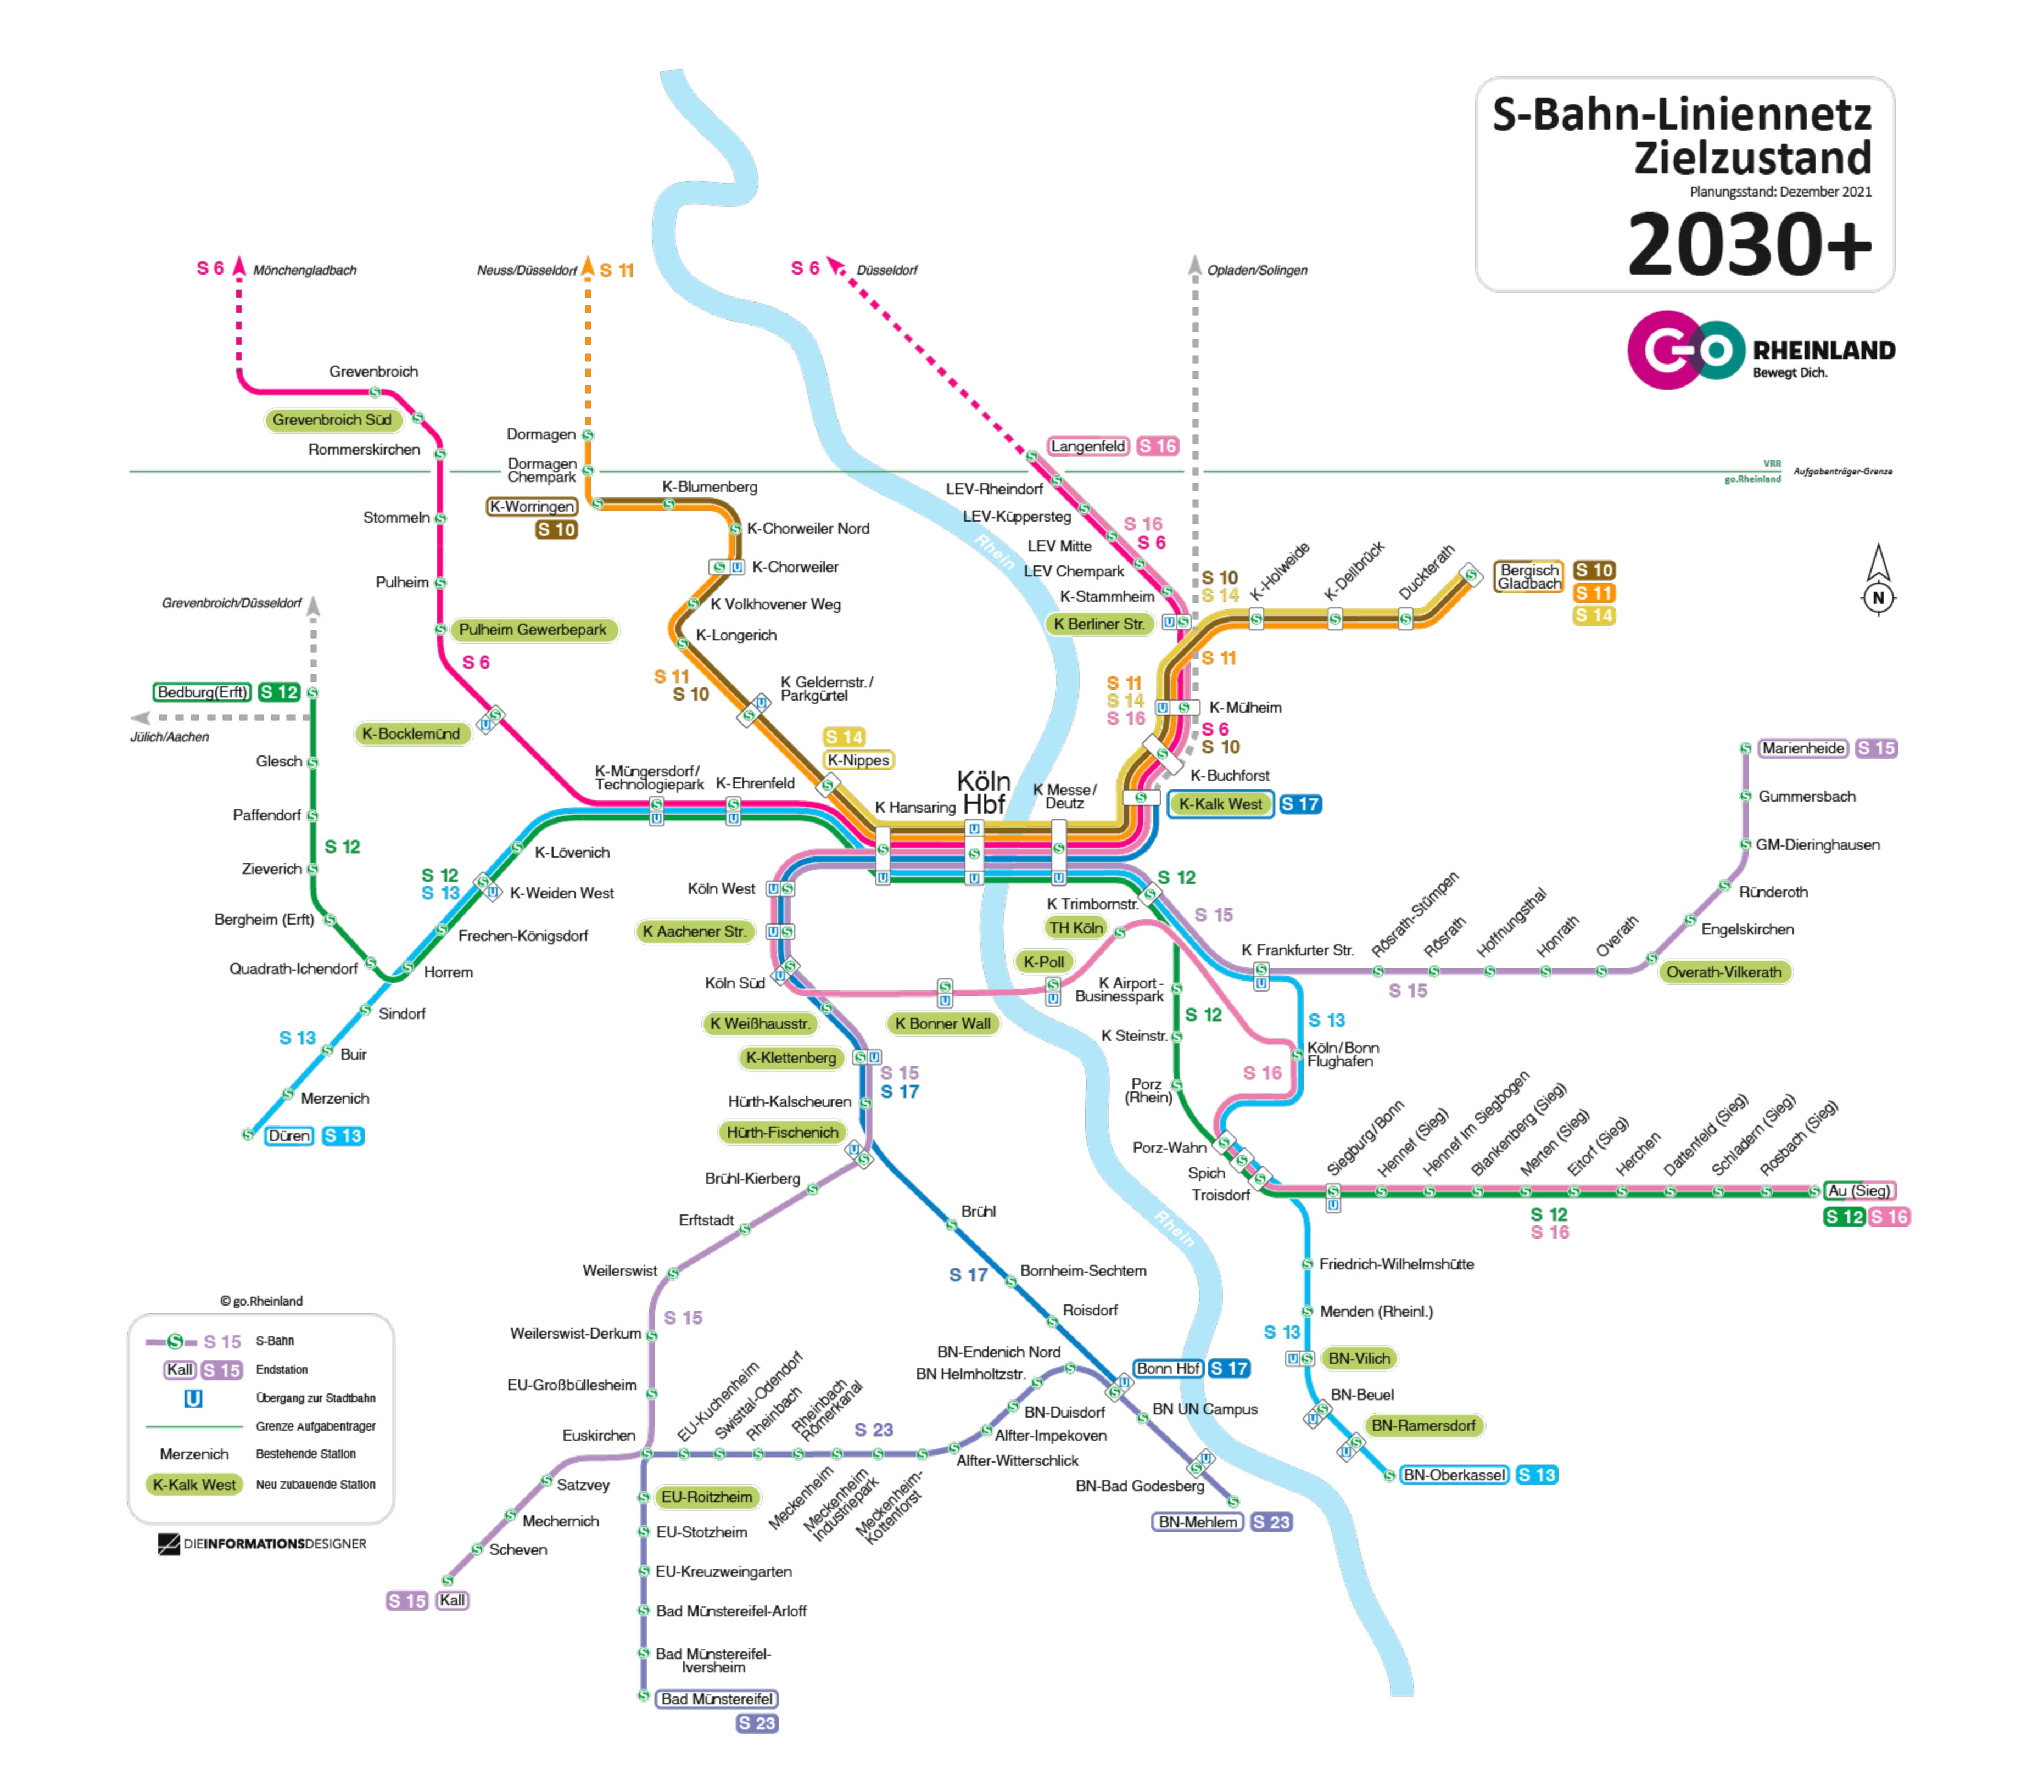 Die Karte zeigt das geplante S-Bahn-Liniennetz im Raum go.Rheinland mit einem Zielzustand für das Jahr 2030 und darüber hinaus.